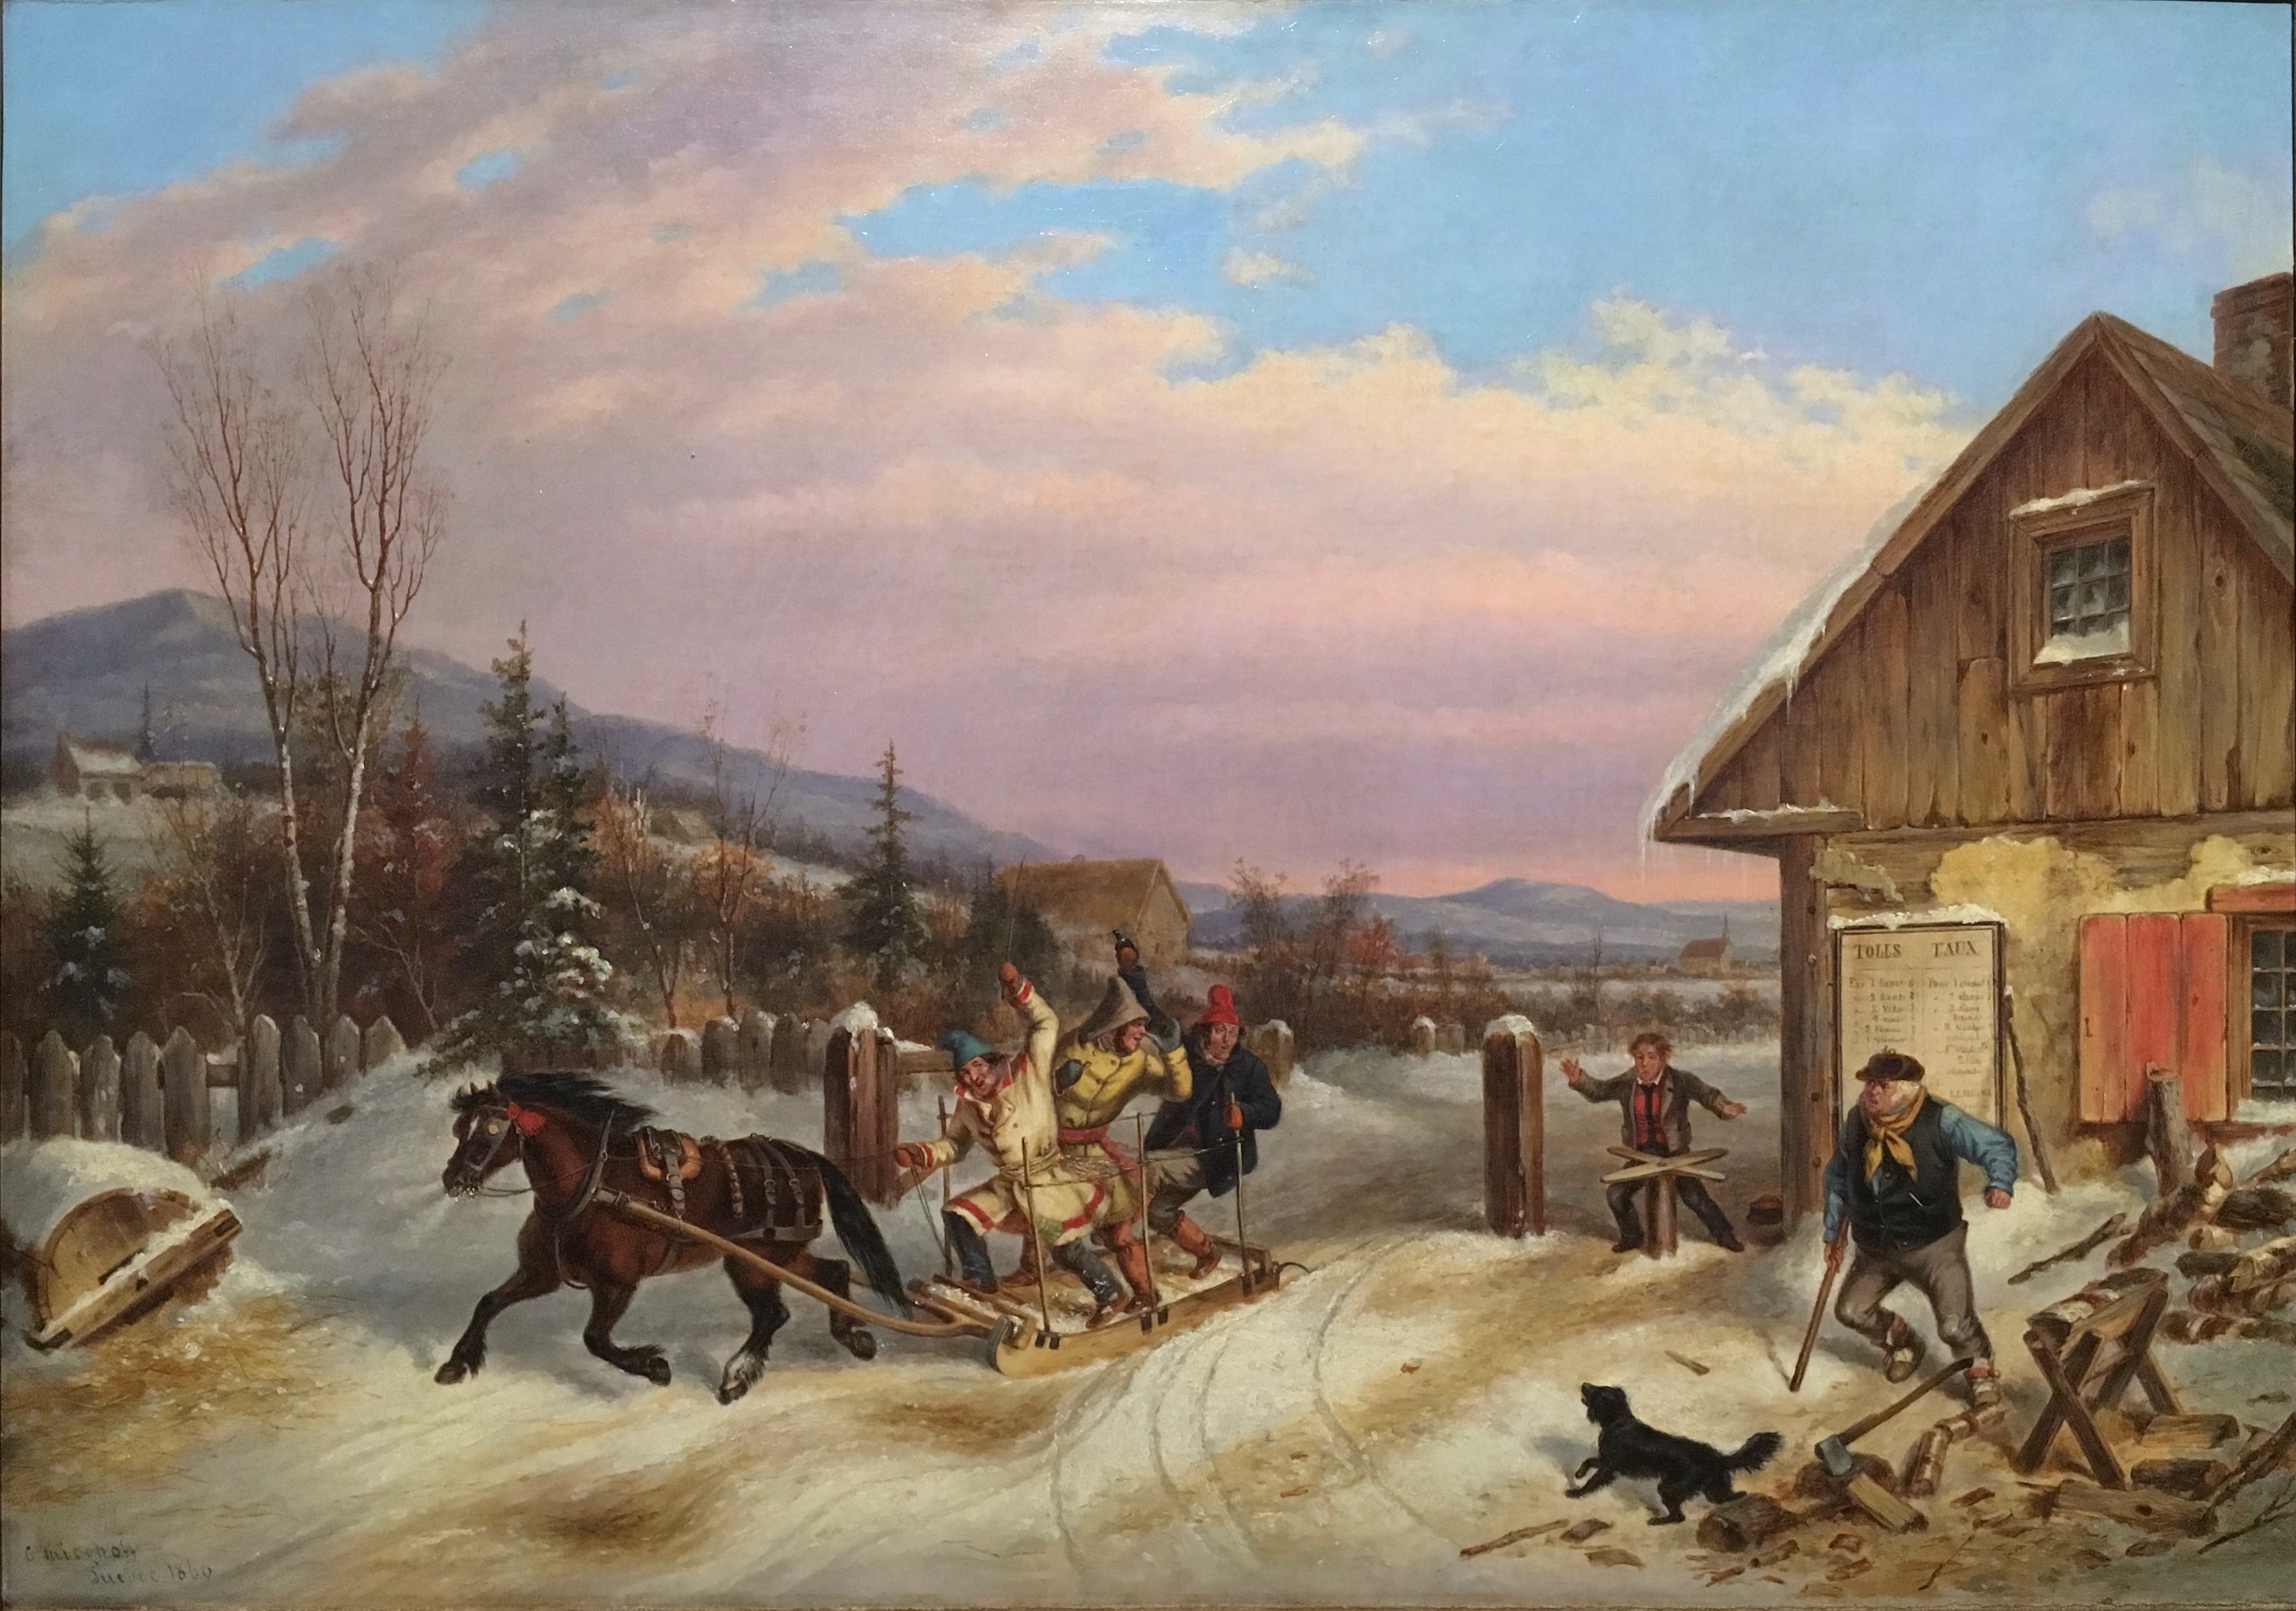 Geçiş Ücretinden Kaçış by Cornelius Krieghoff - 1860 